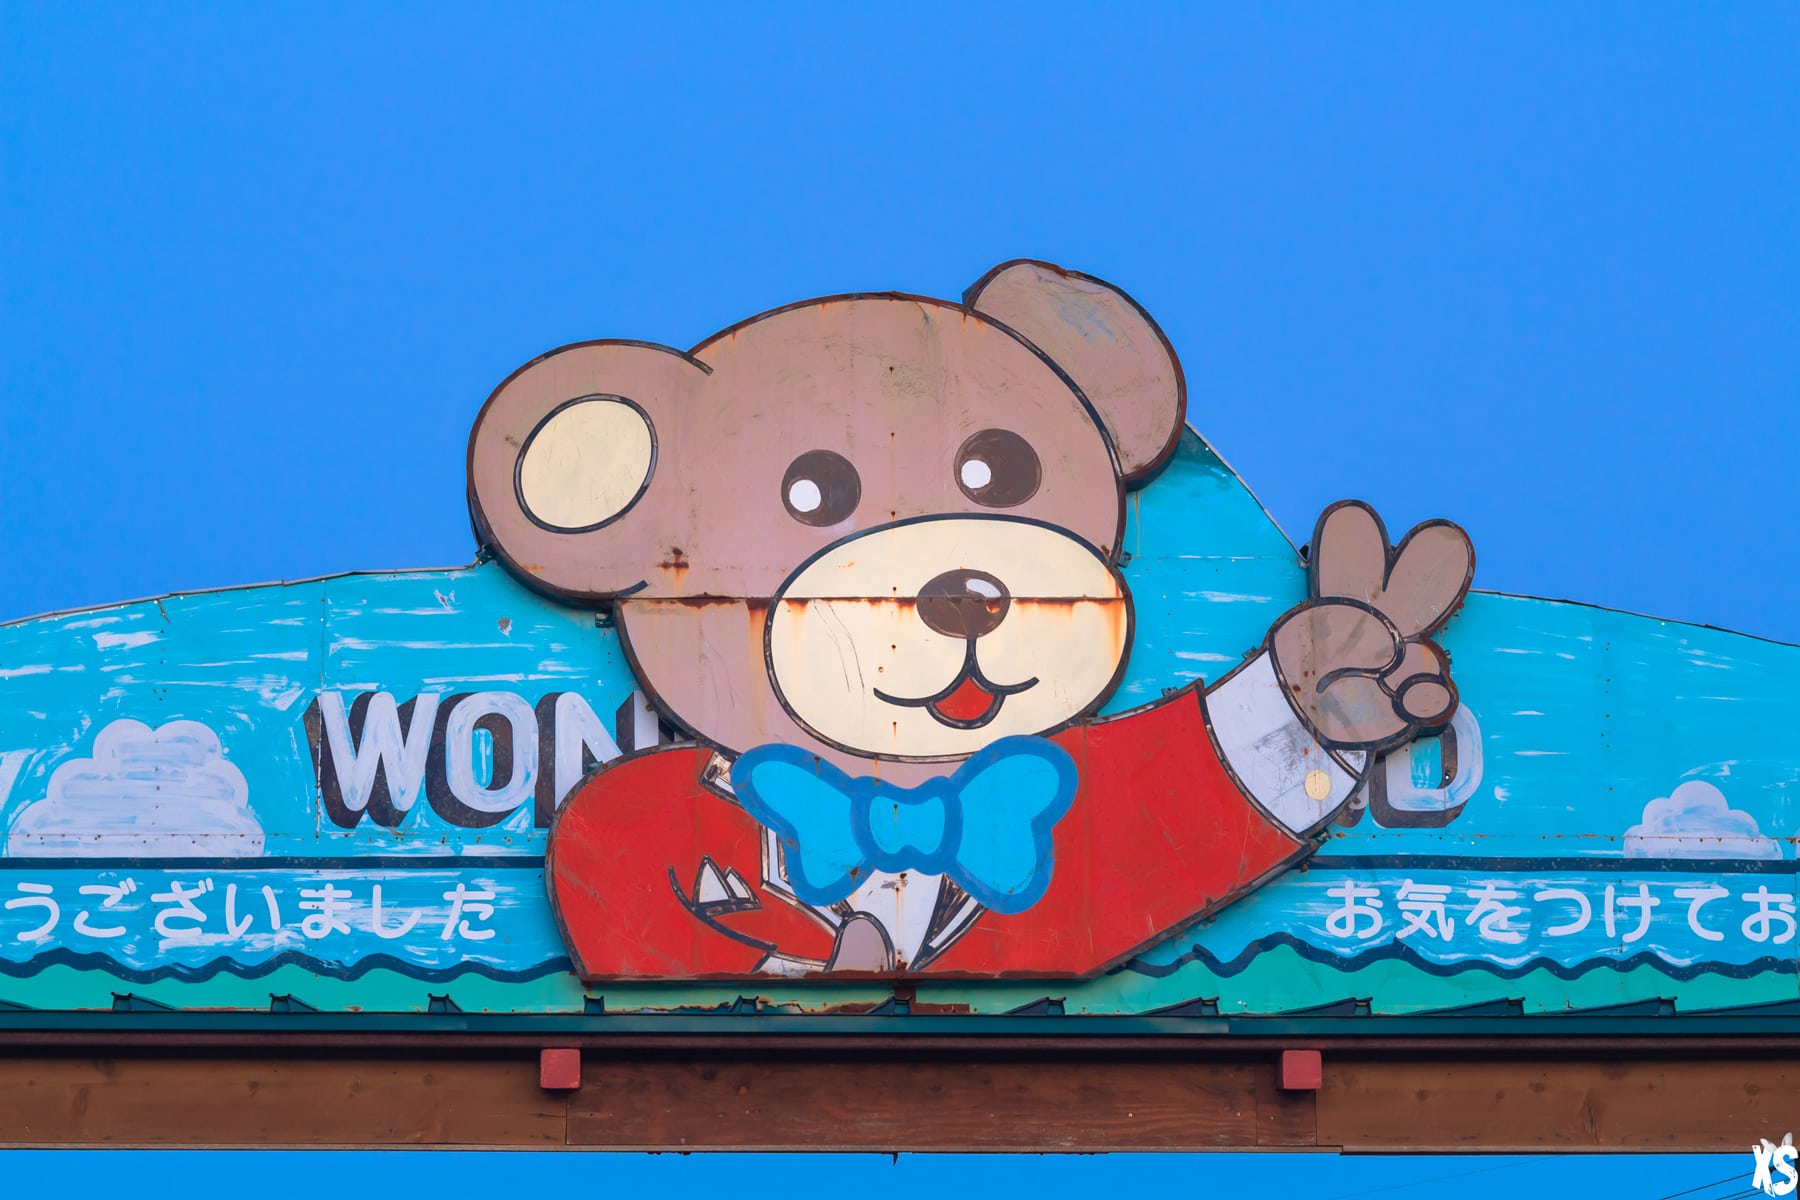 Wonderland - Parc d'attractions abandonnés au Japon : https://urbexsession.com/wonderland